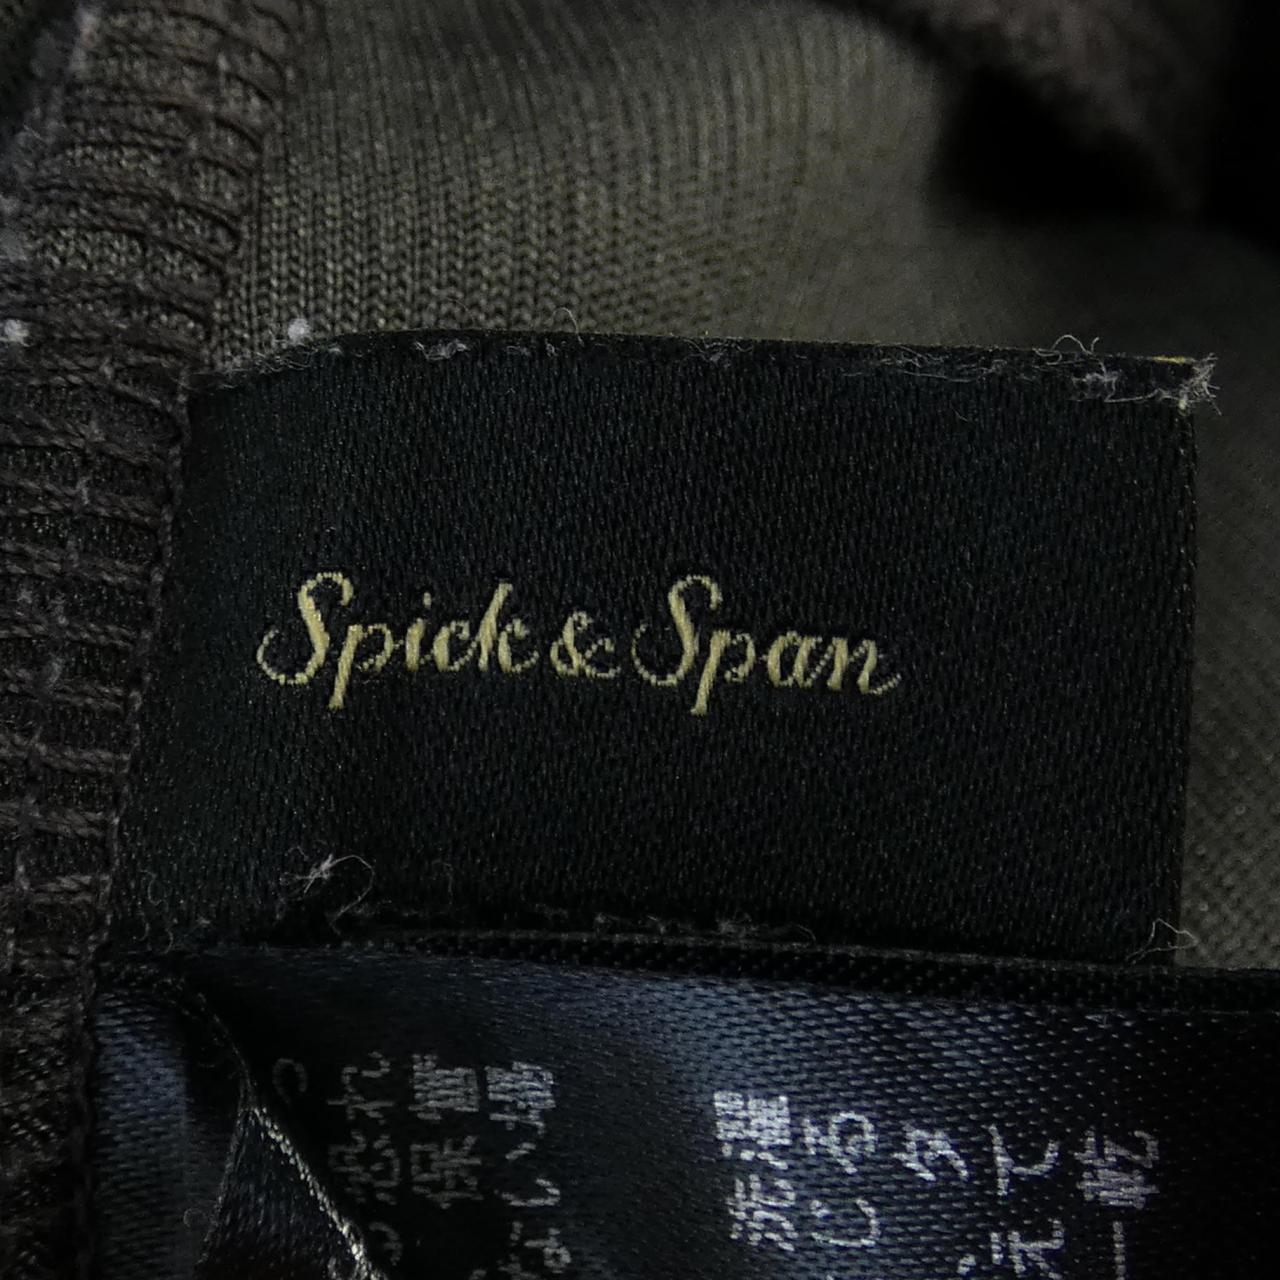 スピックアンドスパン SPICK & SPAN スカート